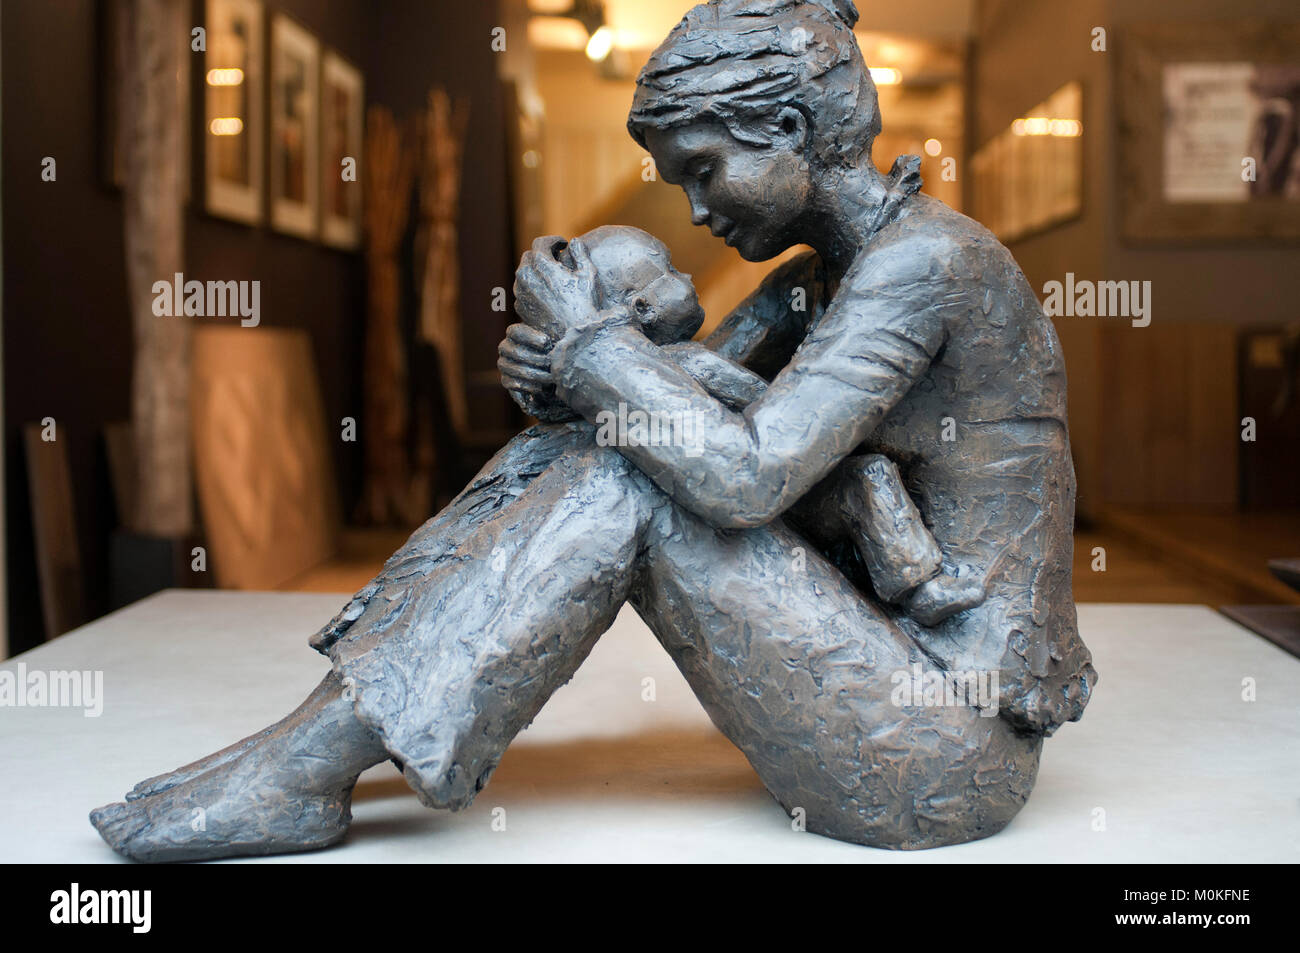 La mère et l'enfant sculpture de bronze en K prêt, galerie des antiques et de décoration, Marolles, Bruxelles, Belgique Banque D'Images